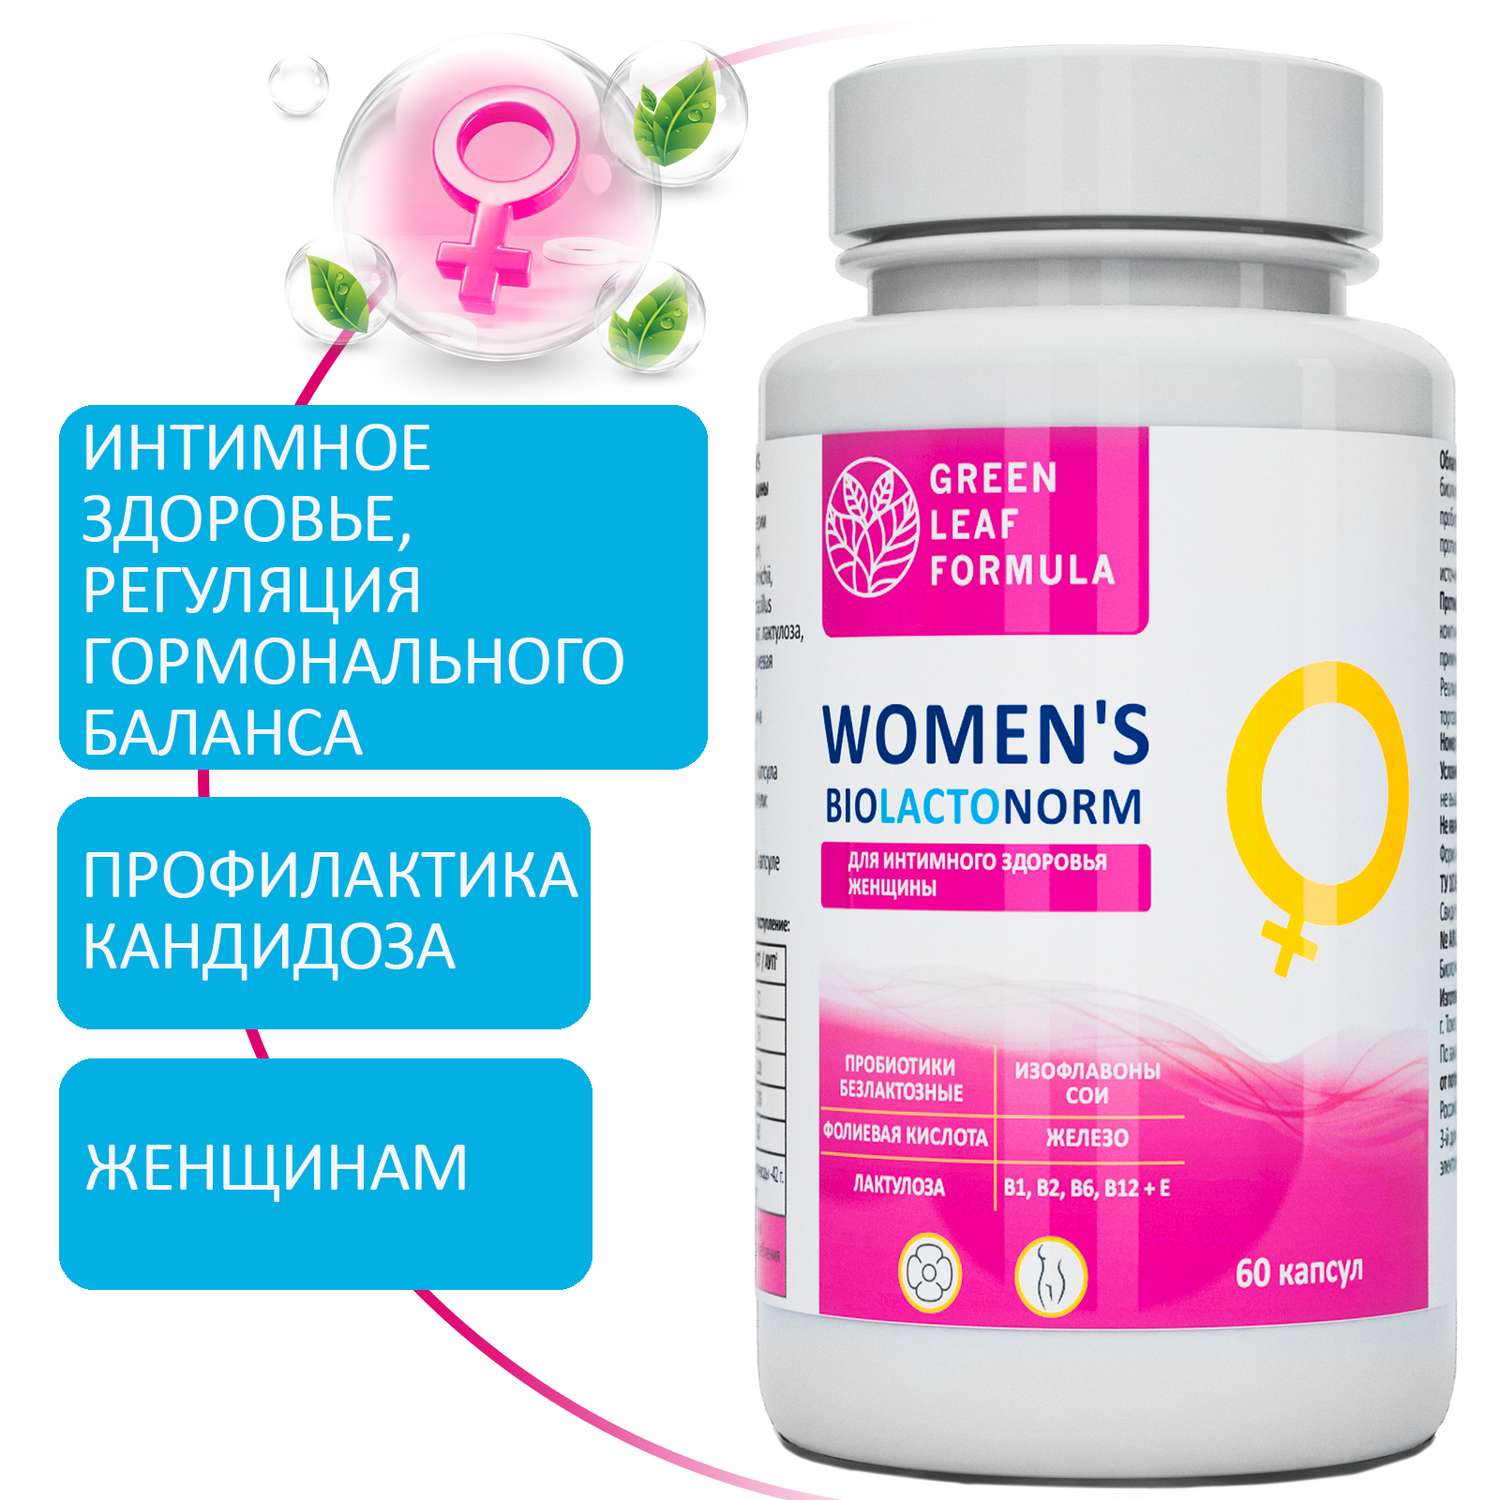 Пробиотик для женщин Green Leaf Formula фитоэстрогены витамин Д3 600 МЕ масло МСТ для энергии - фото 2